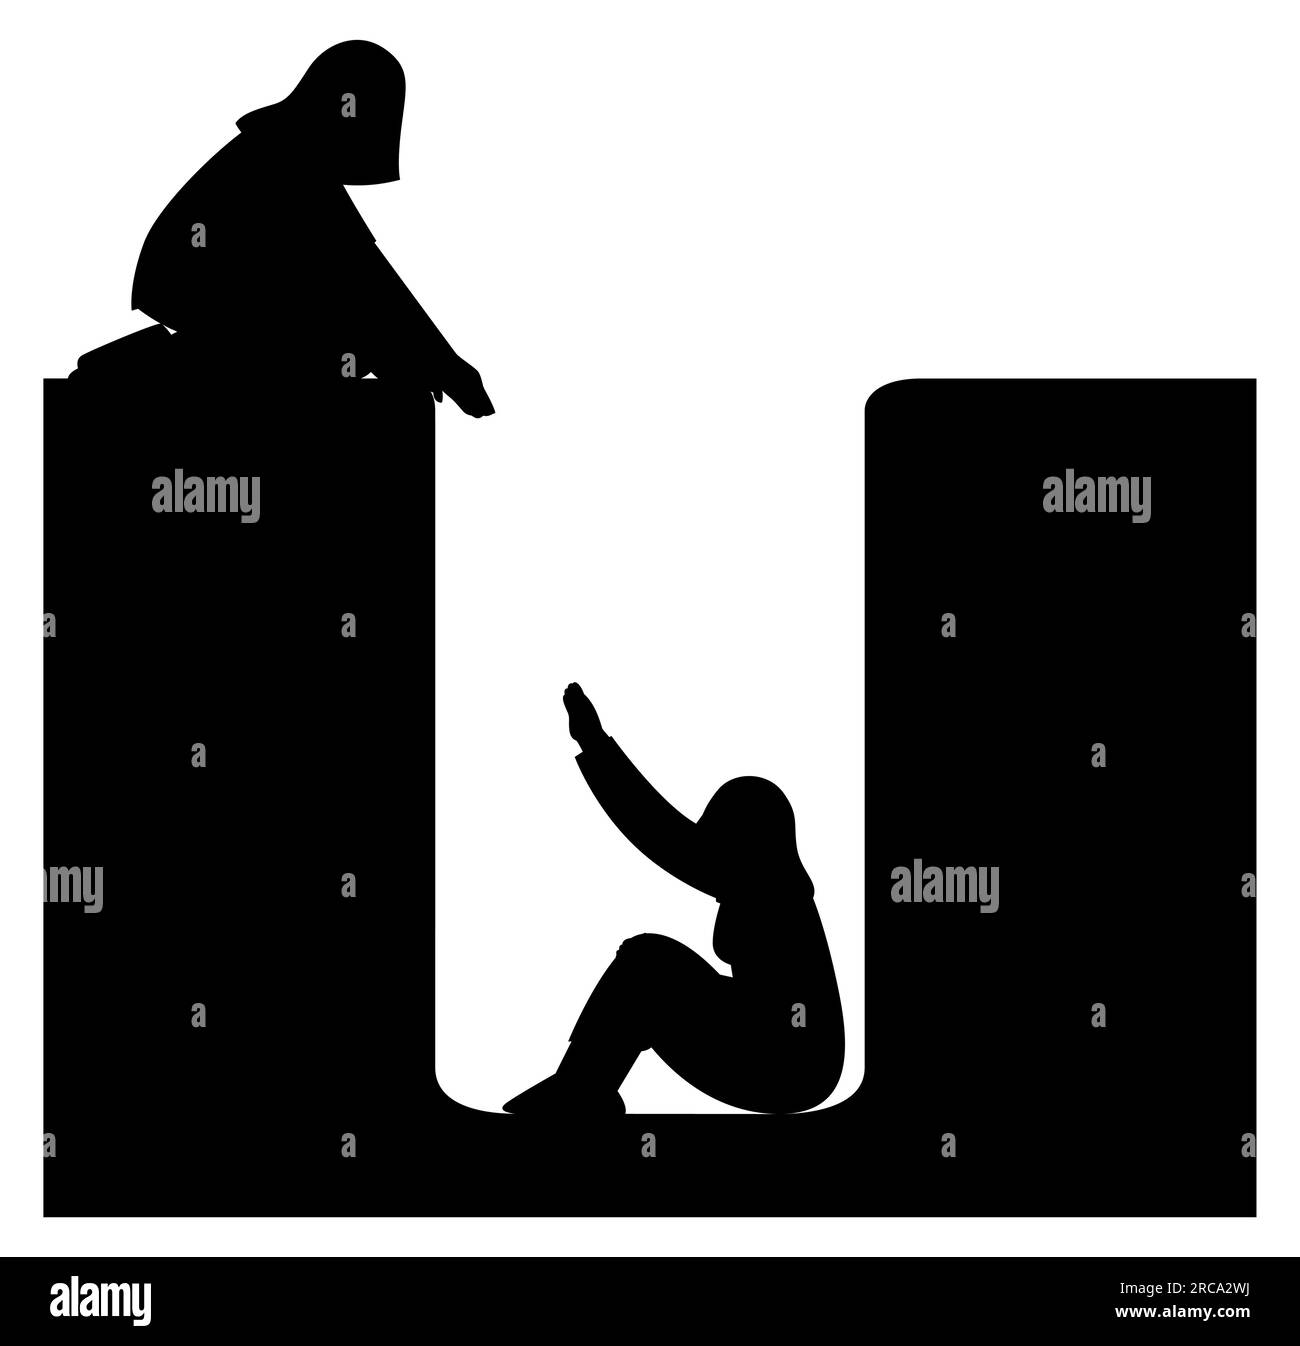 Silhouette noire de deux femmes qui s'entraident, étapes pour faire une amitié saine, illustration vectorielle isolée sur fond blanc Illustration de Vecteur